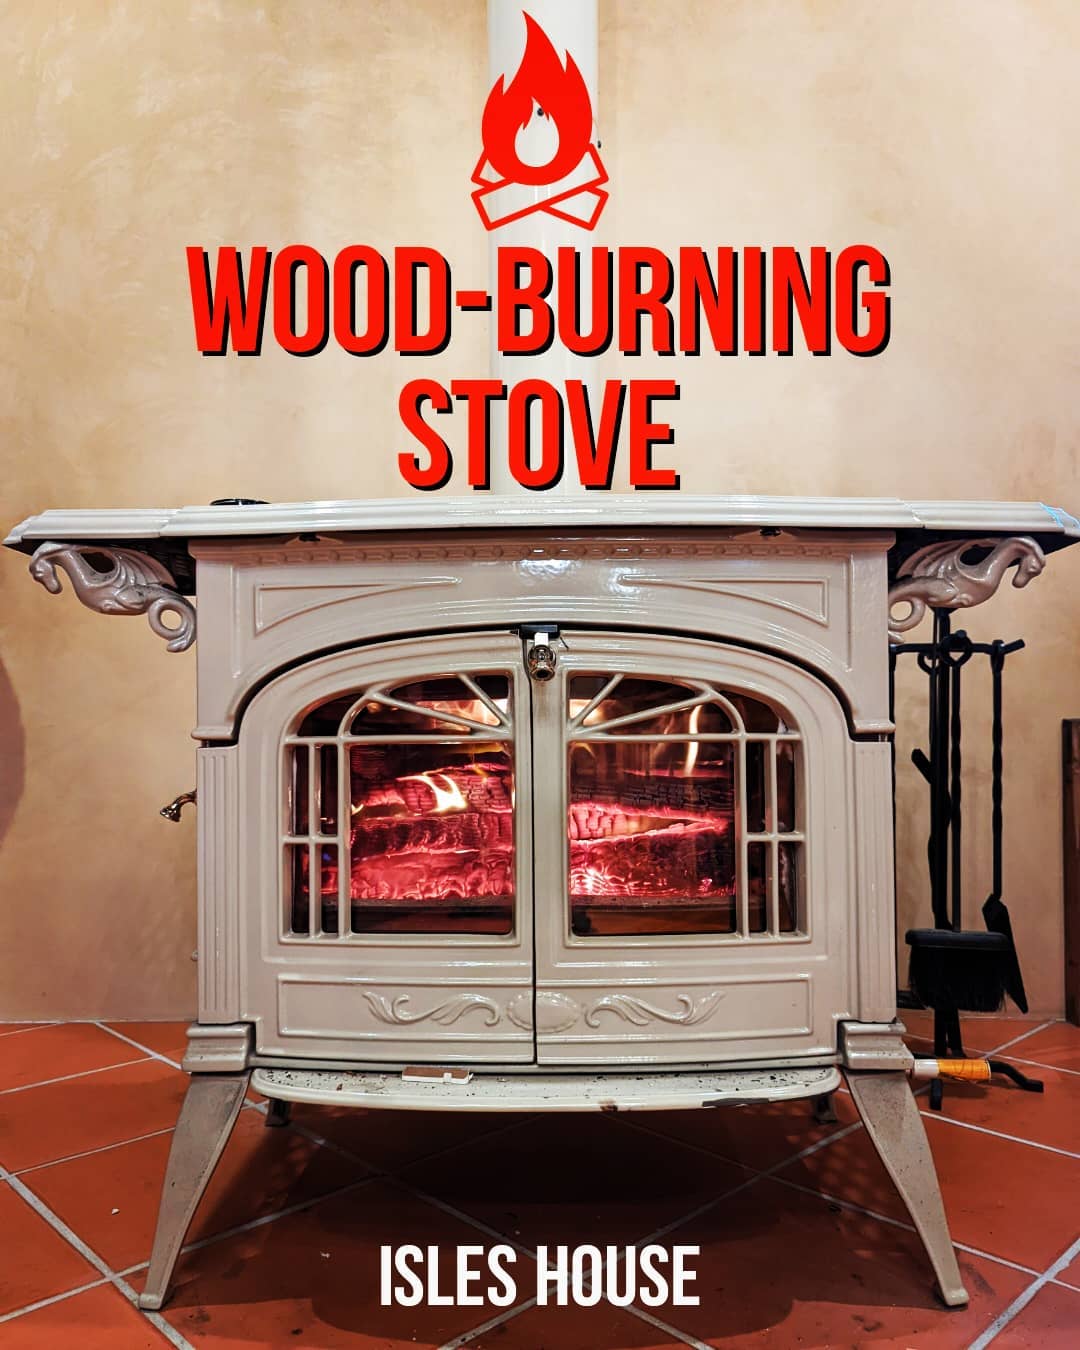 今シーズン初のモデルハウス薪ストーブに火を入れました。
アイルズハウスには薪ストーブ施工例もたくさんあります。
#薪ストーブ